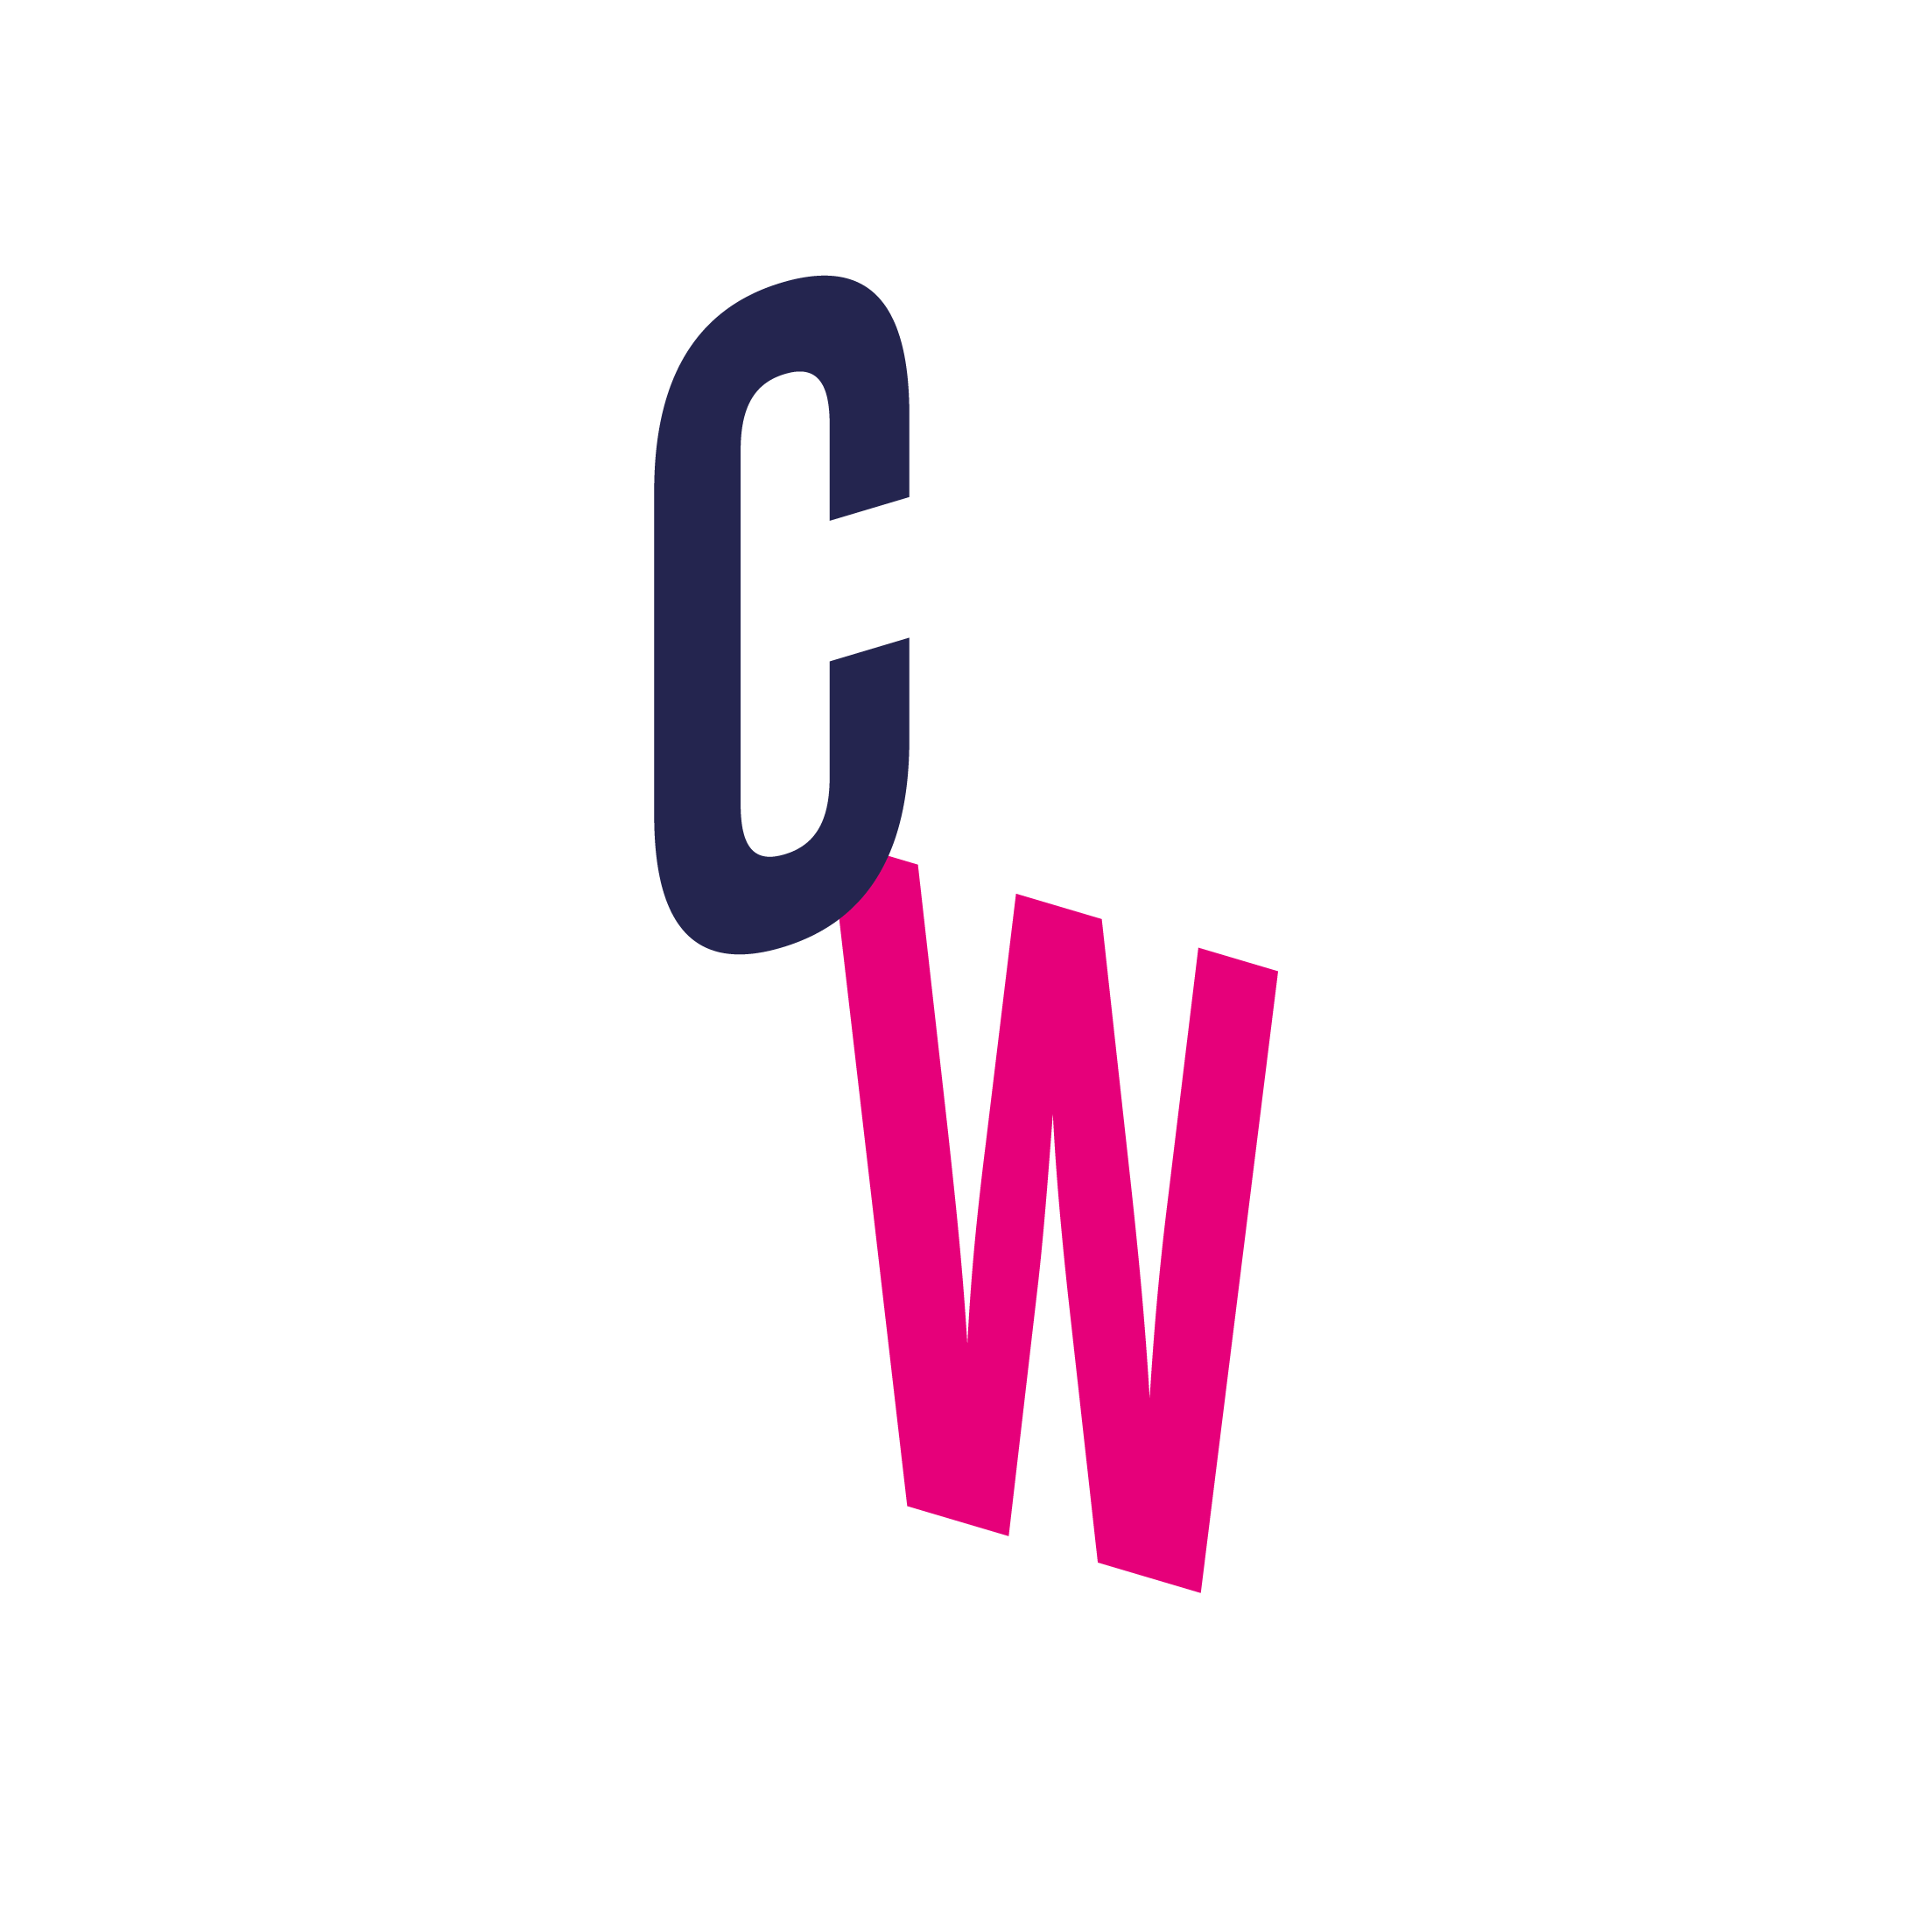 Crosswire logo